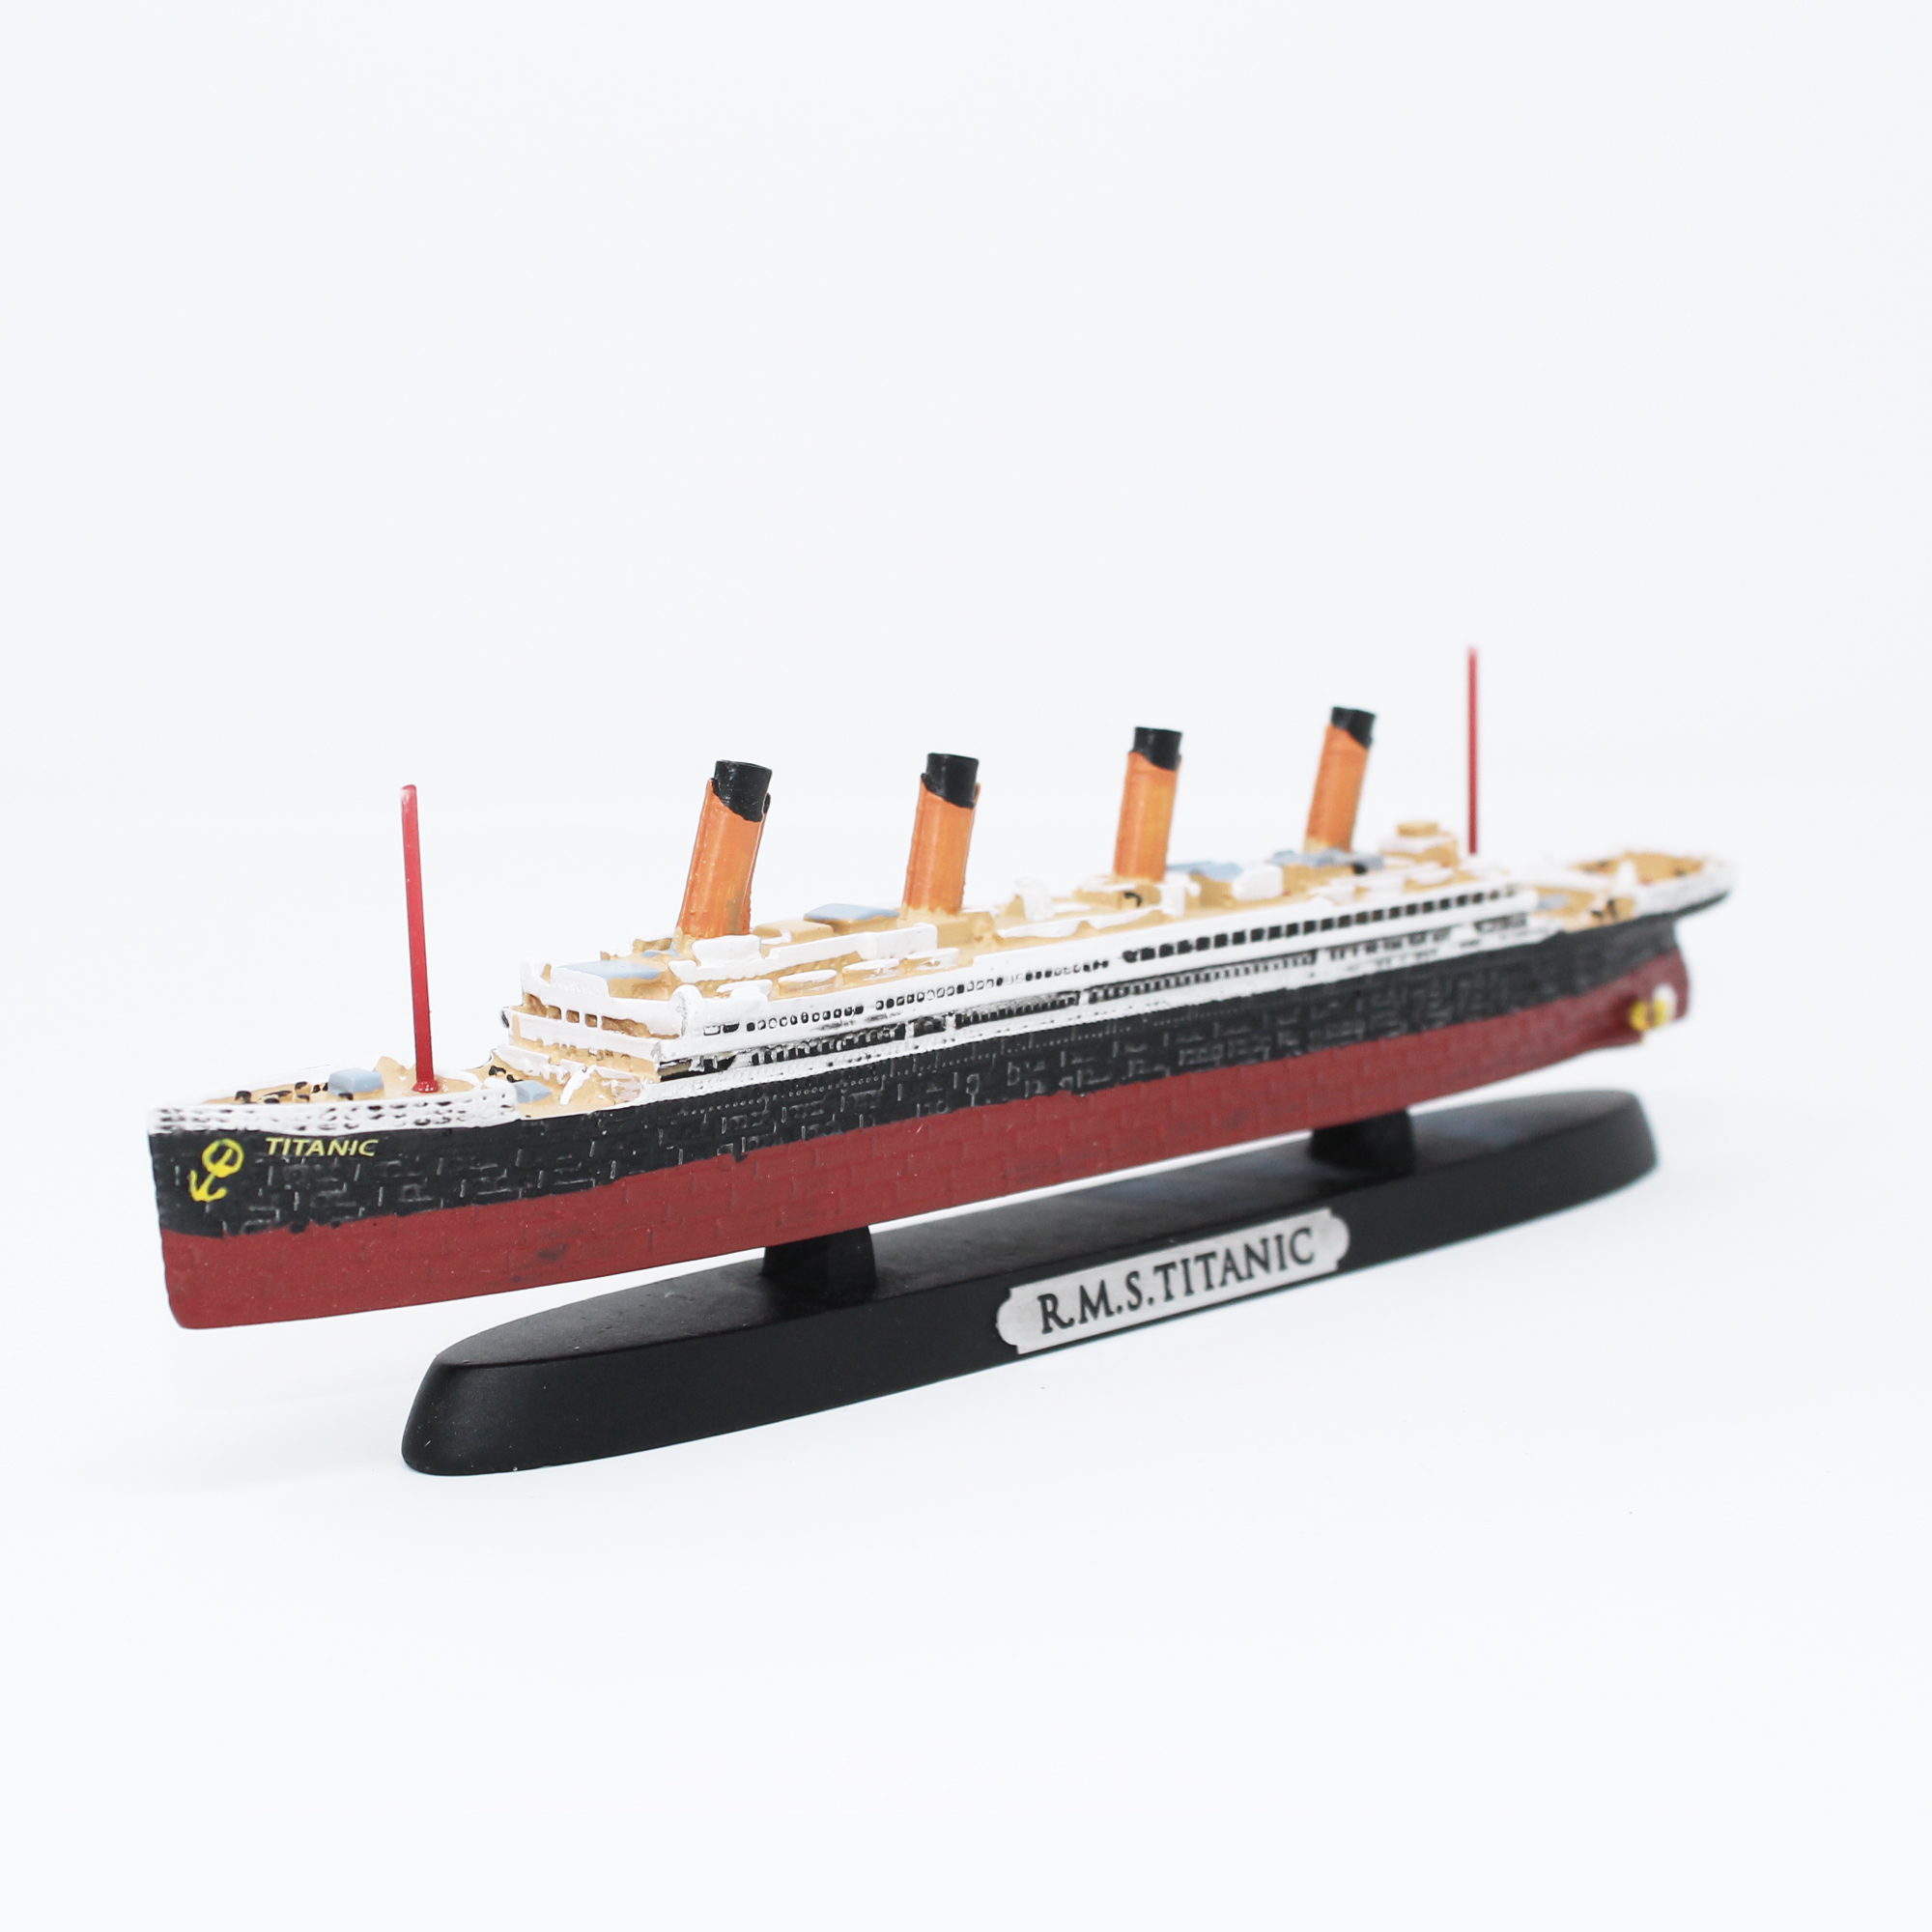 Titanic Replica Ship